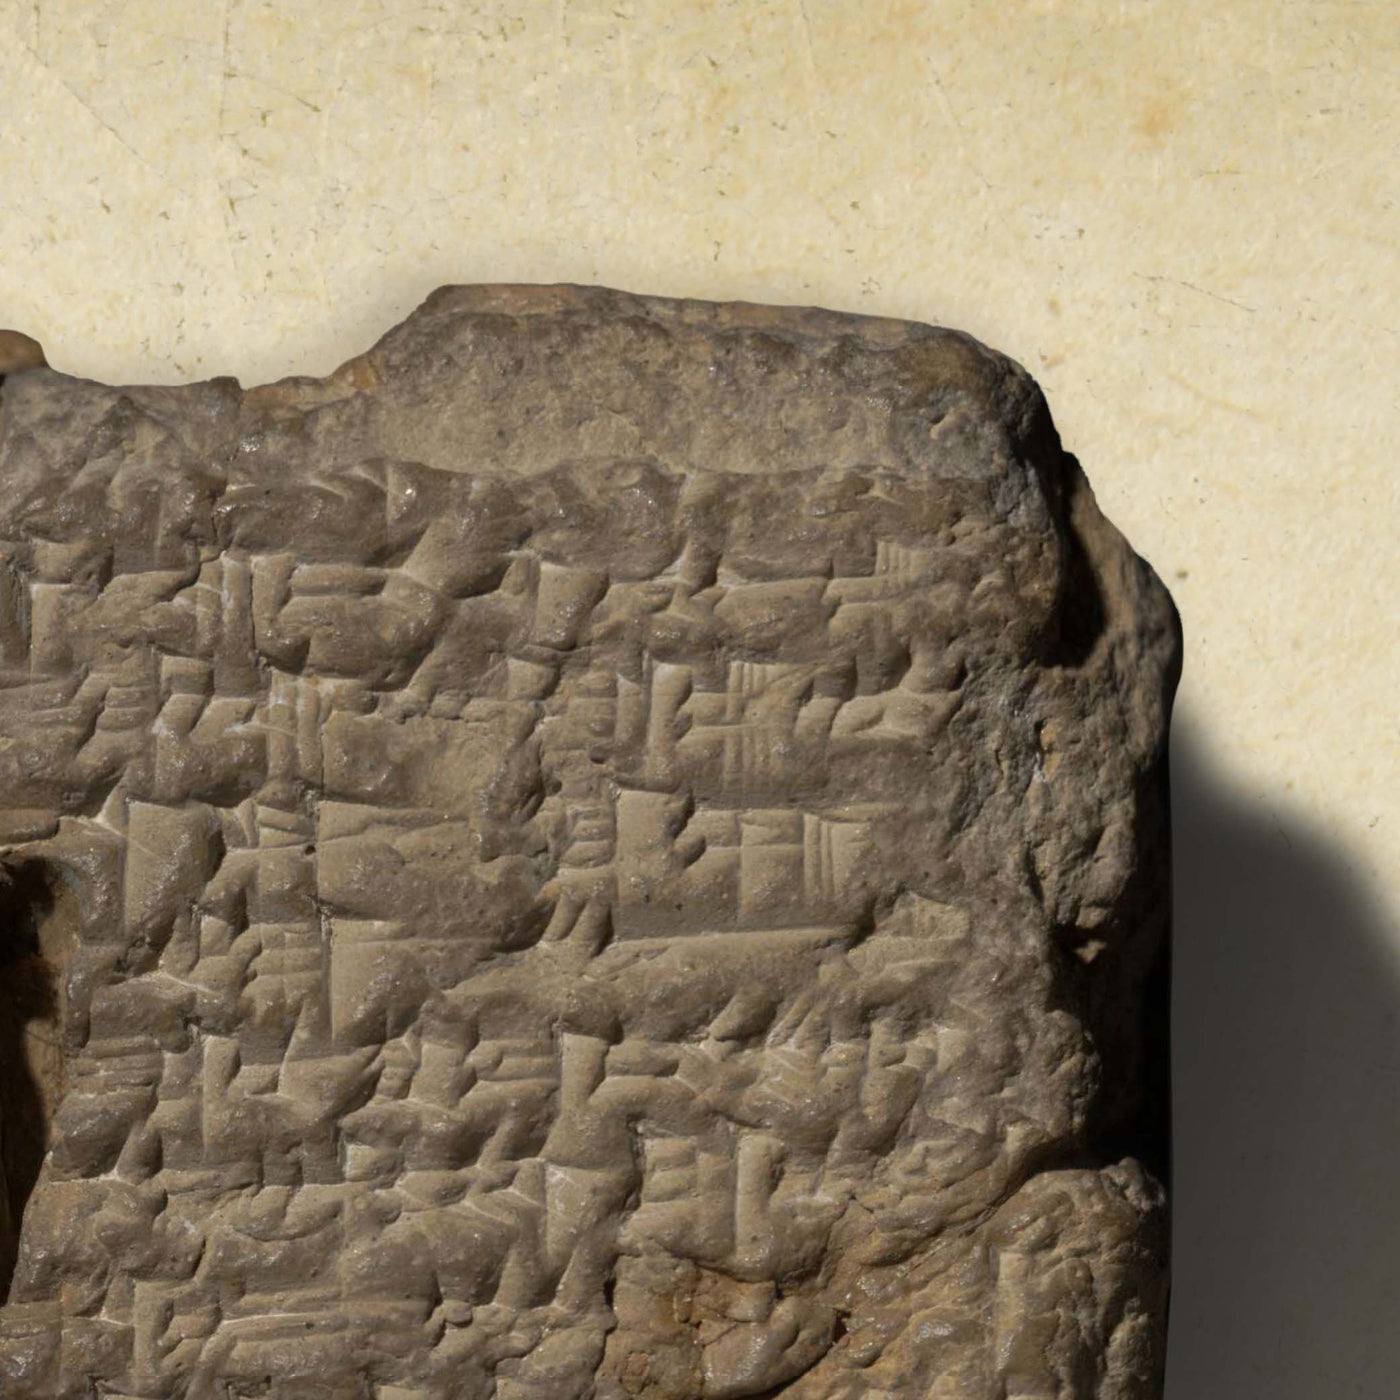 Alte thematische Karte der Antike, -600: Babylon, Nil, Mittelmeer, Ganges, Himalaya